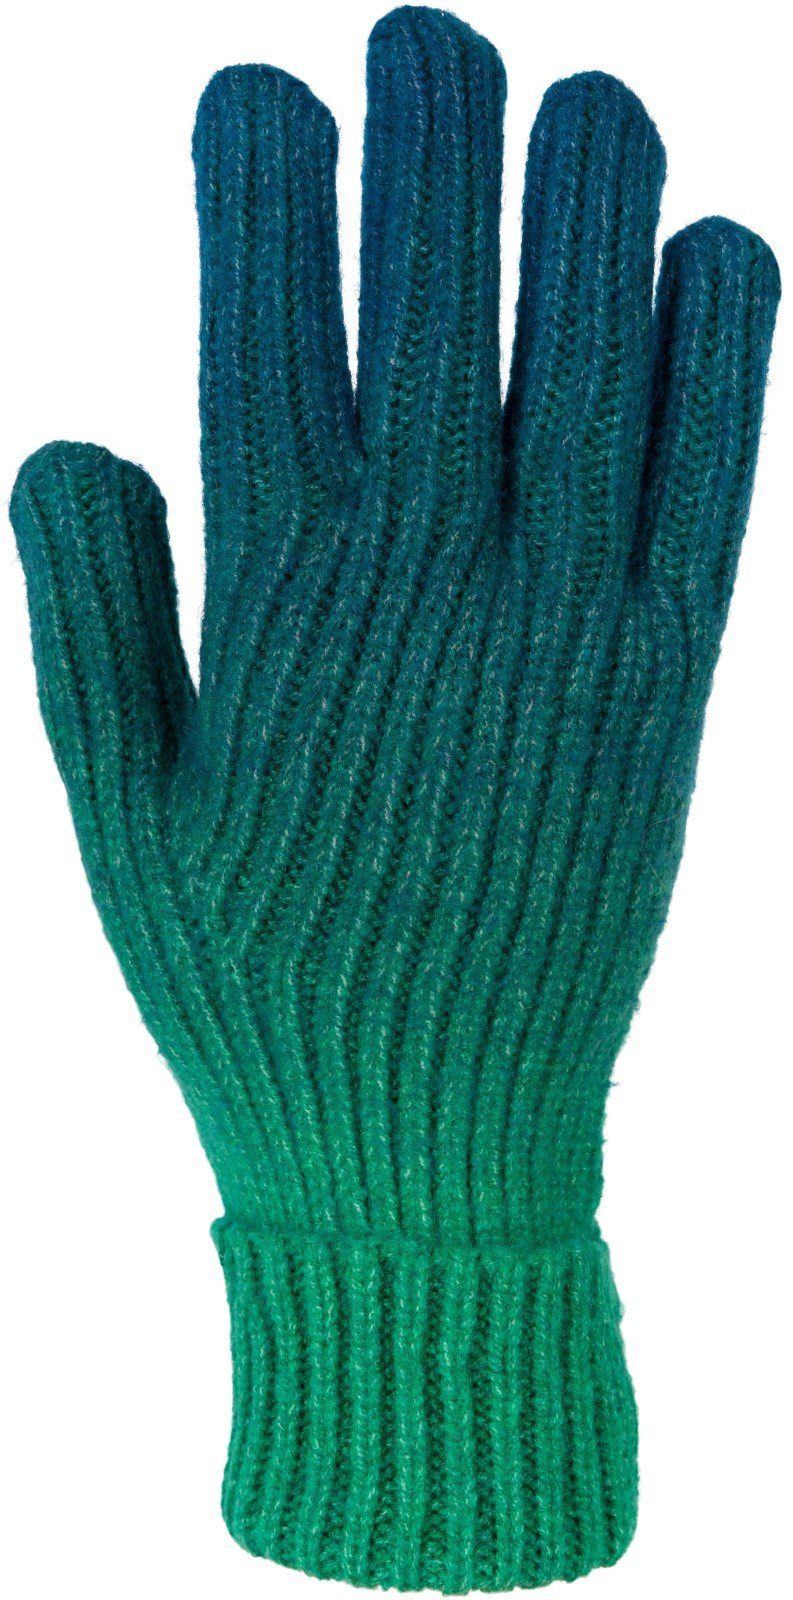 Petrol-Grün Strickhandschuhe Muster Farbverlauf Strickhandschuhe styleBREAKER